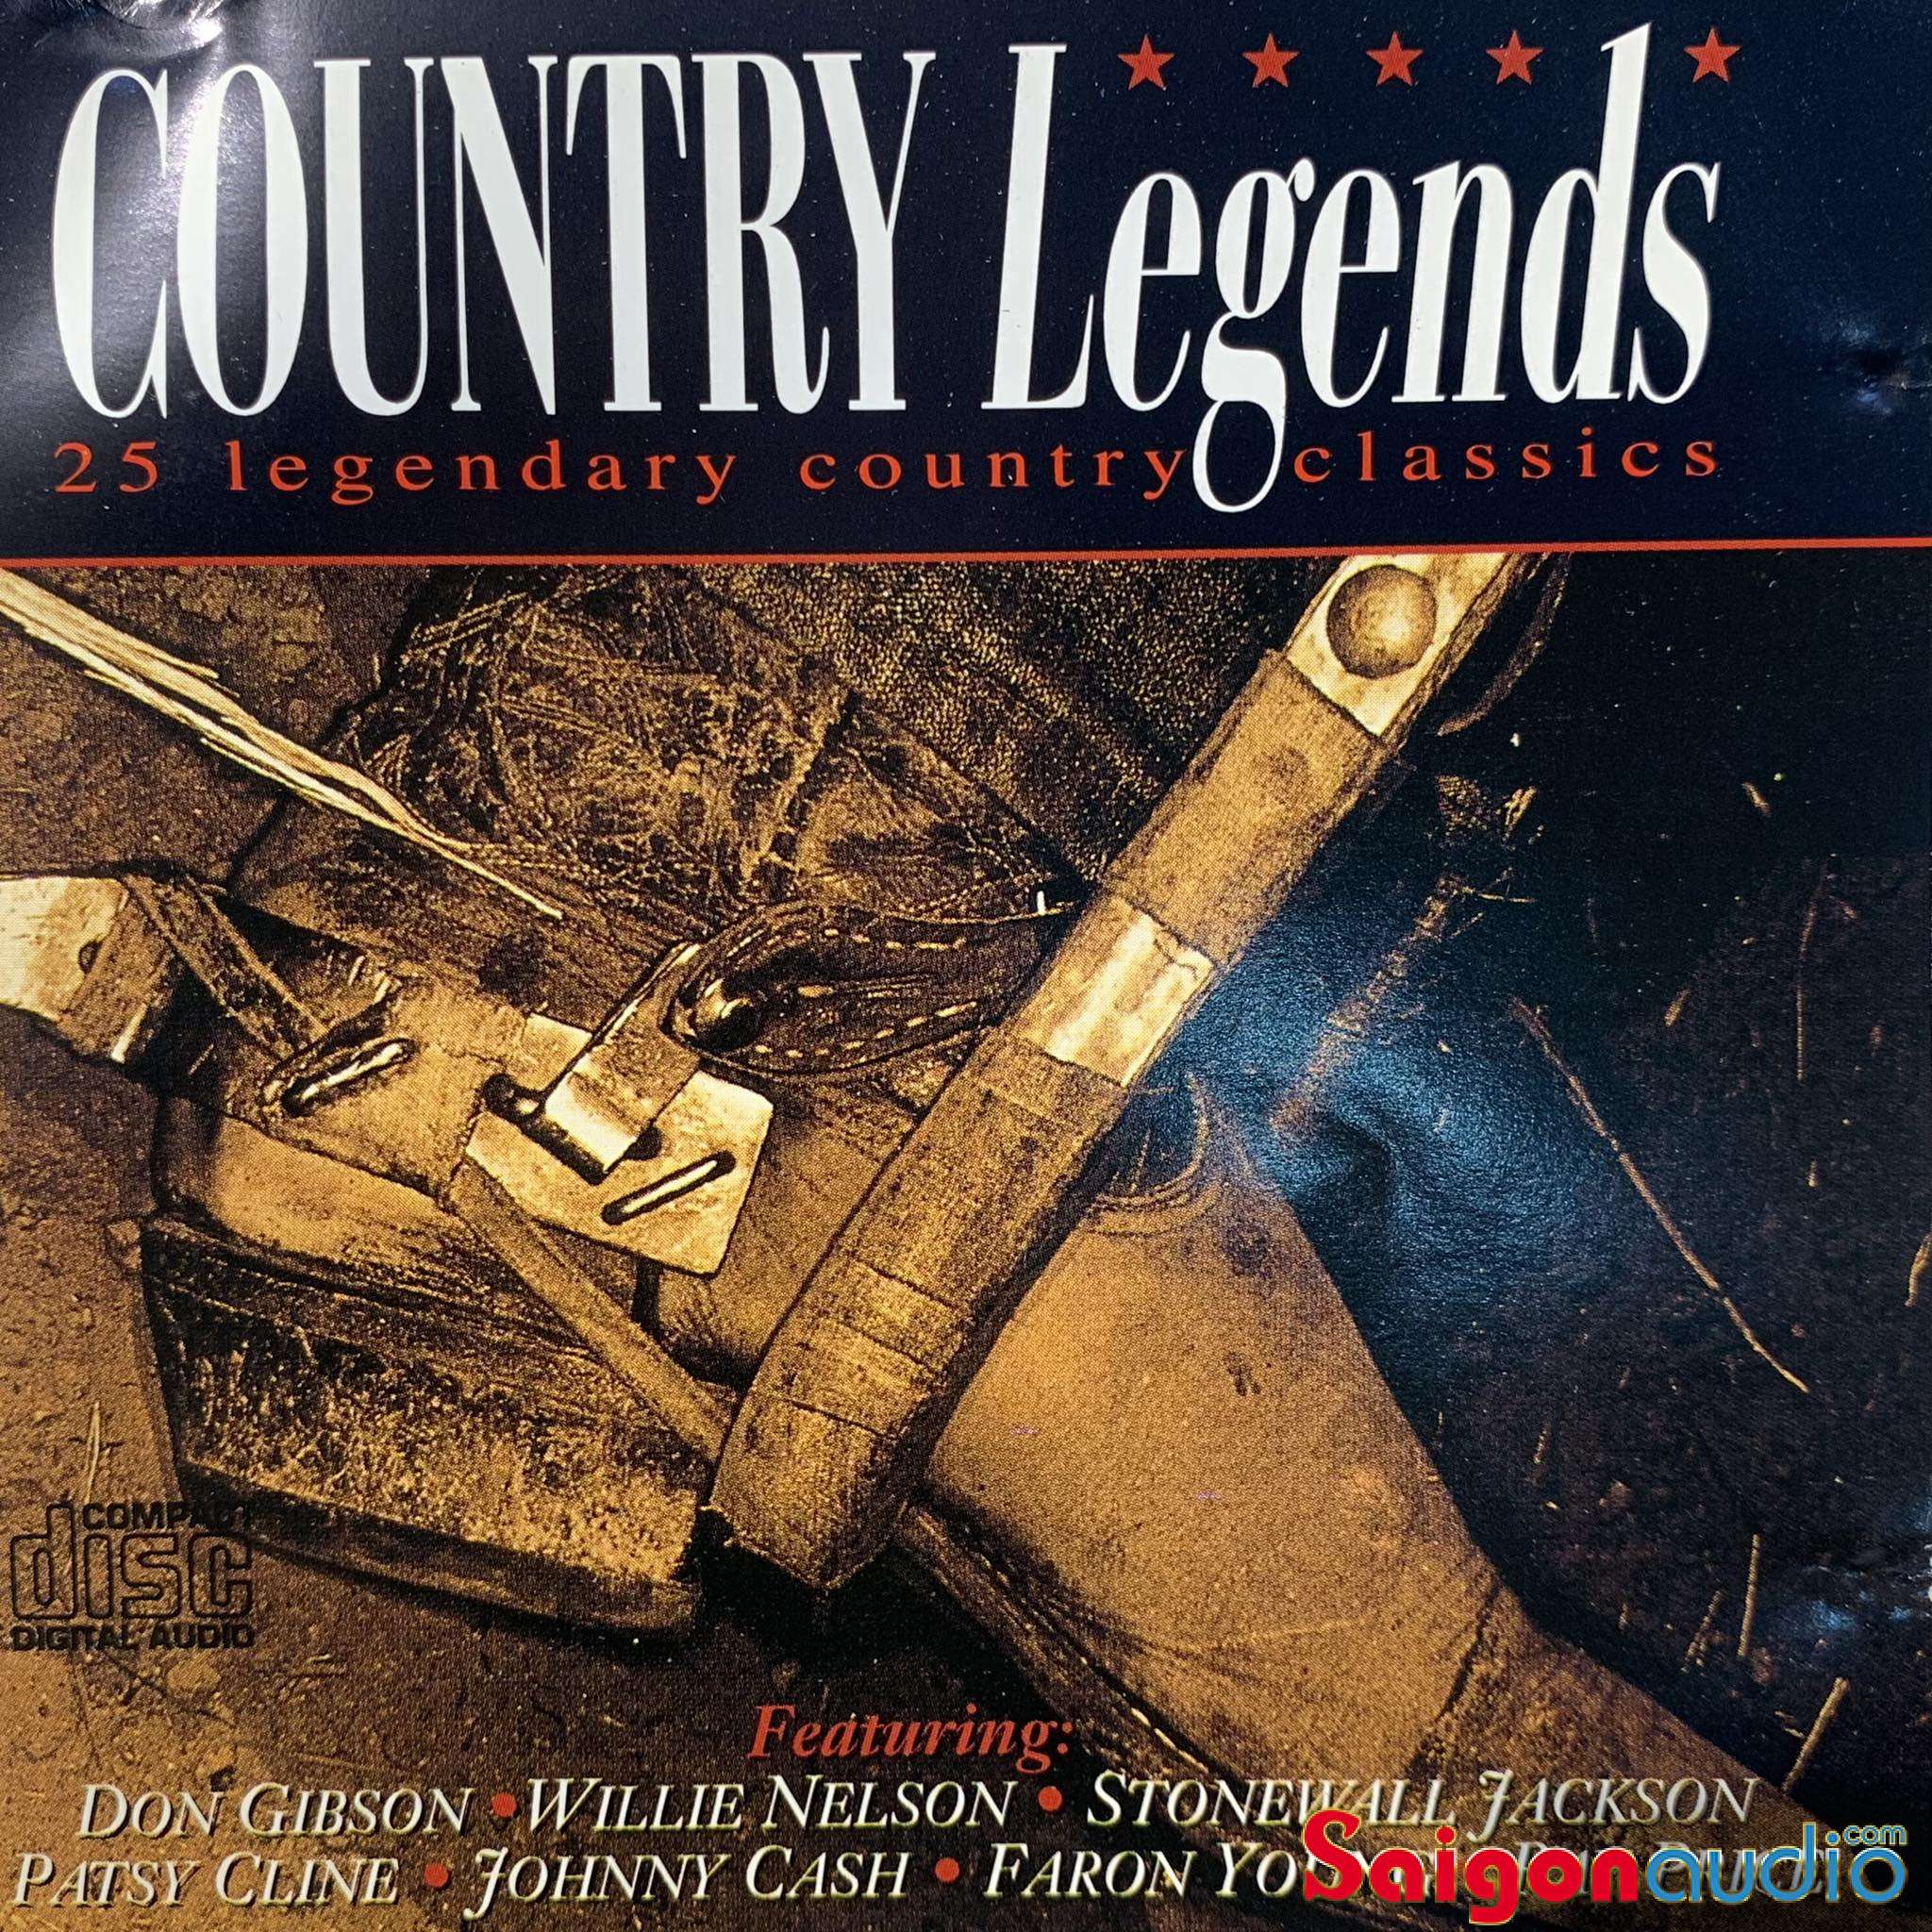 Đĩa CD gốc nhạc country Country Legends - 25 Legendary Country Classics (Free ship khi mua 2 đĩa CD cùng hoặc khác loại)